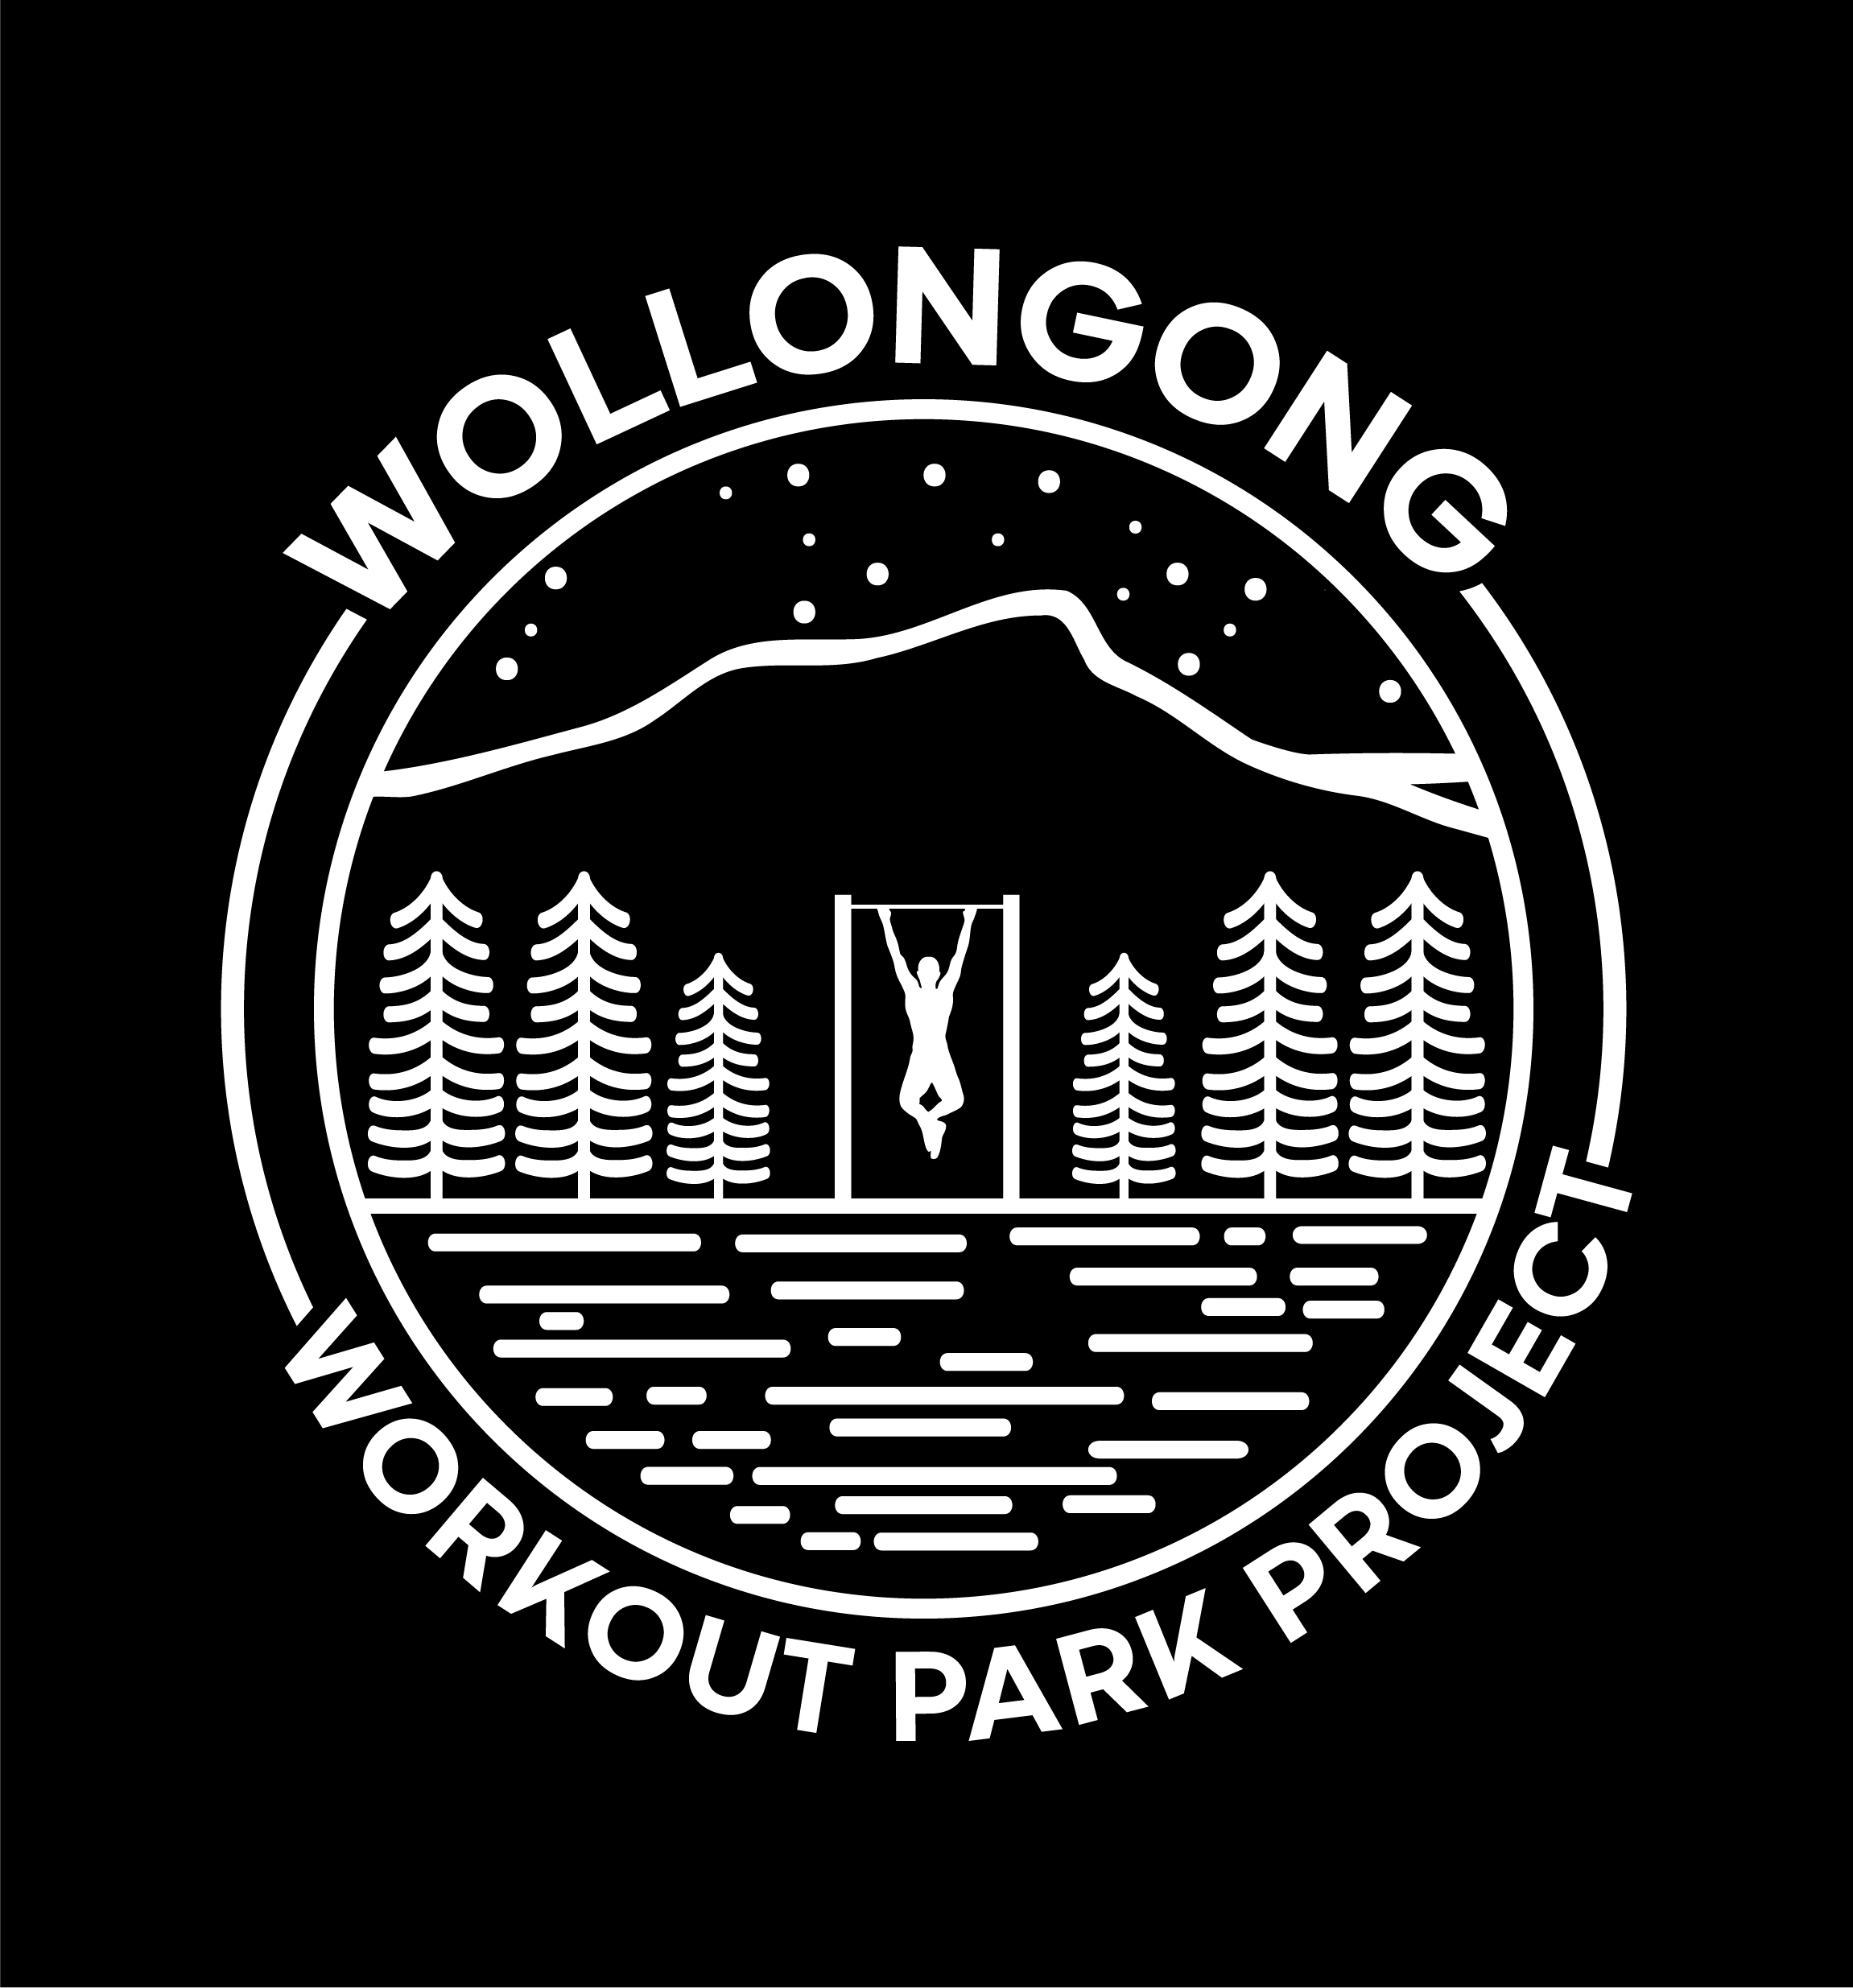 Wollongong-02.jpg